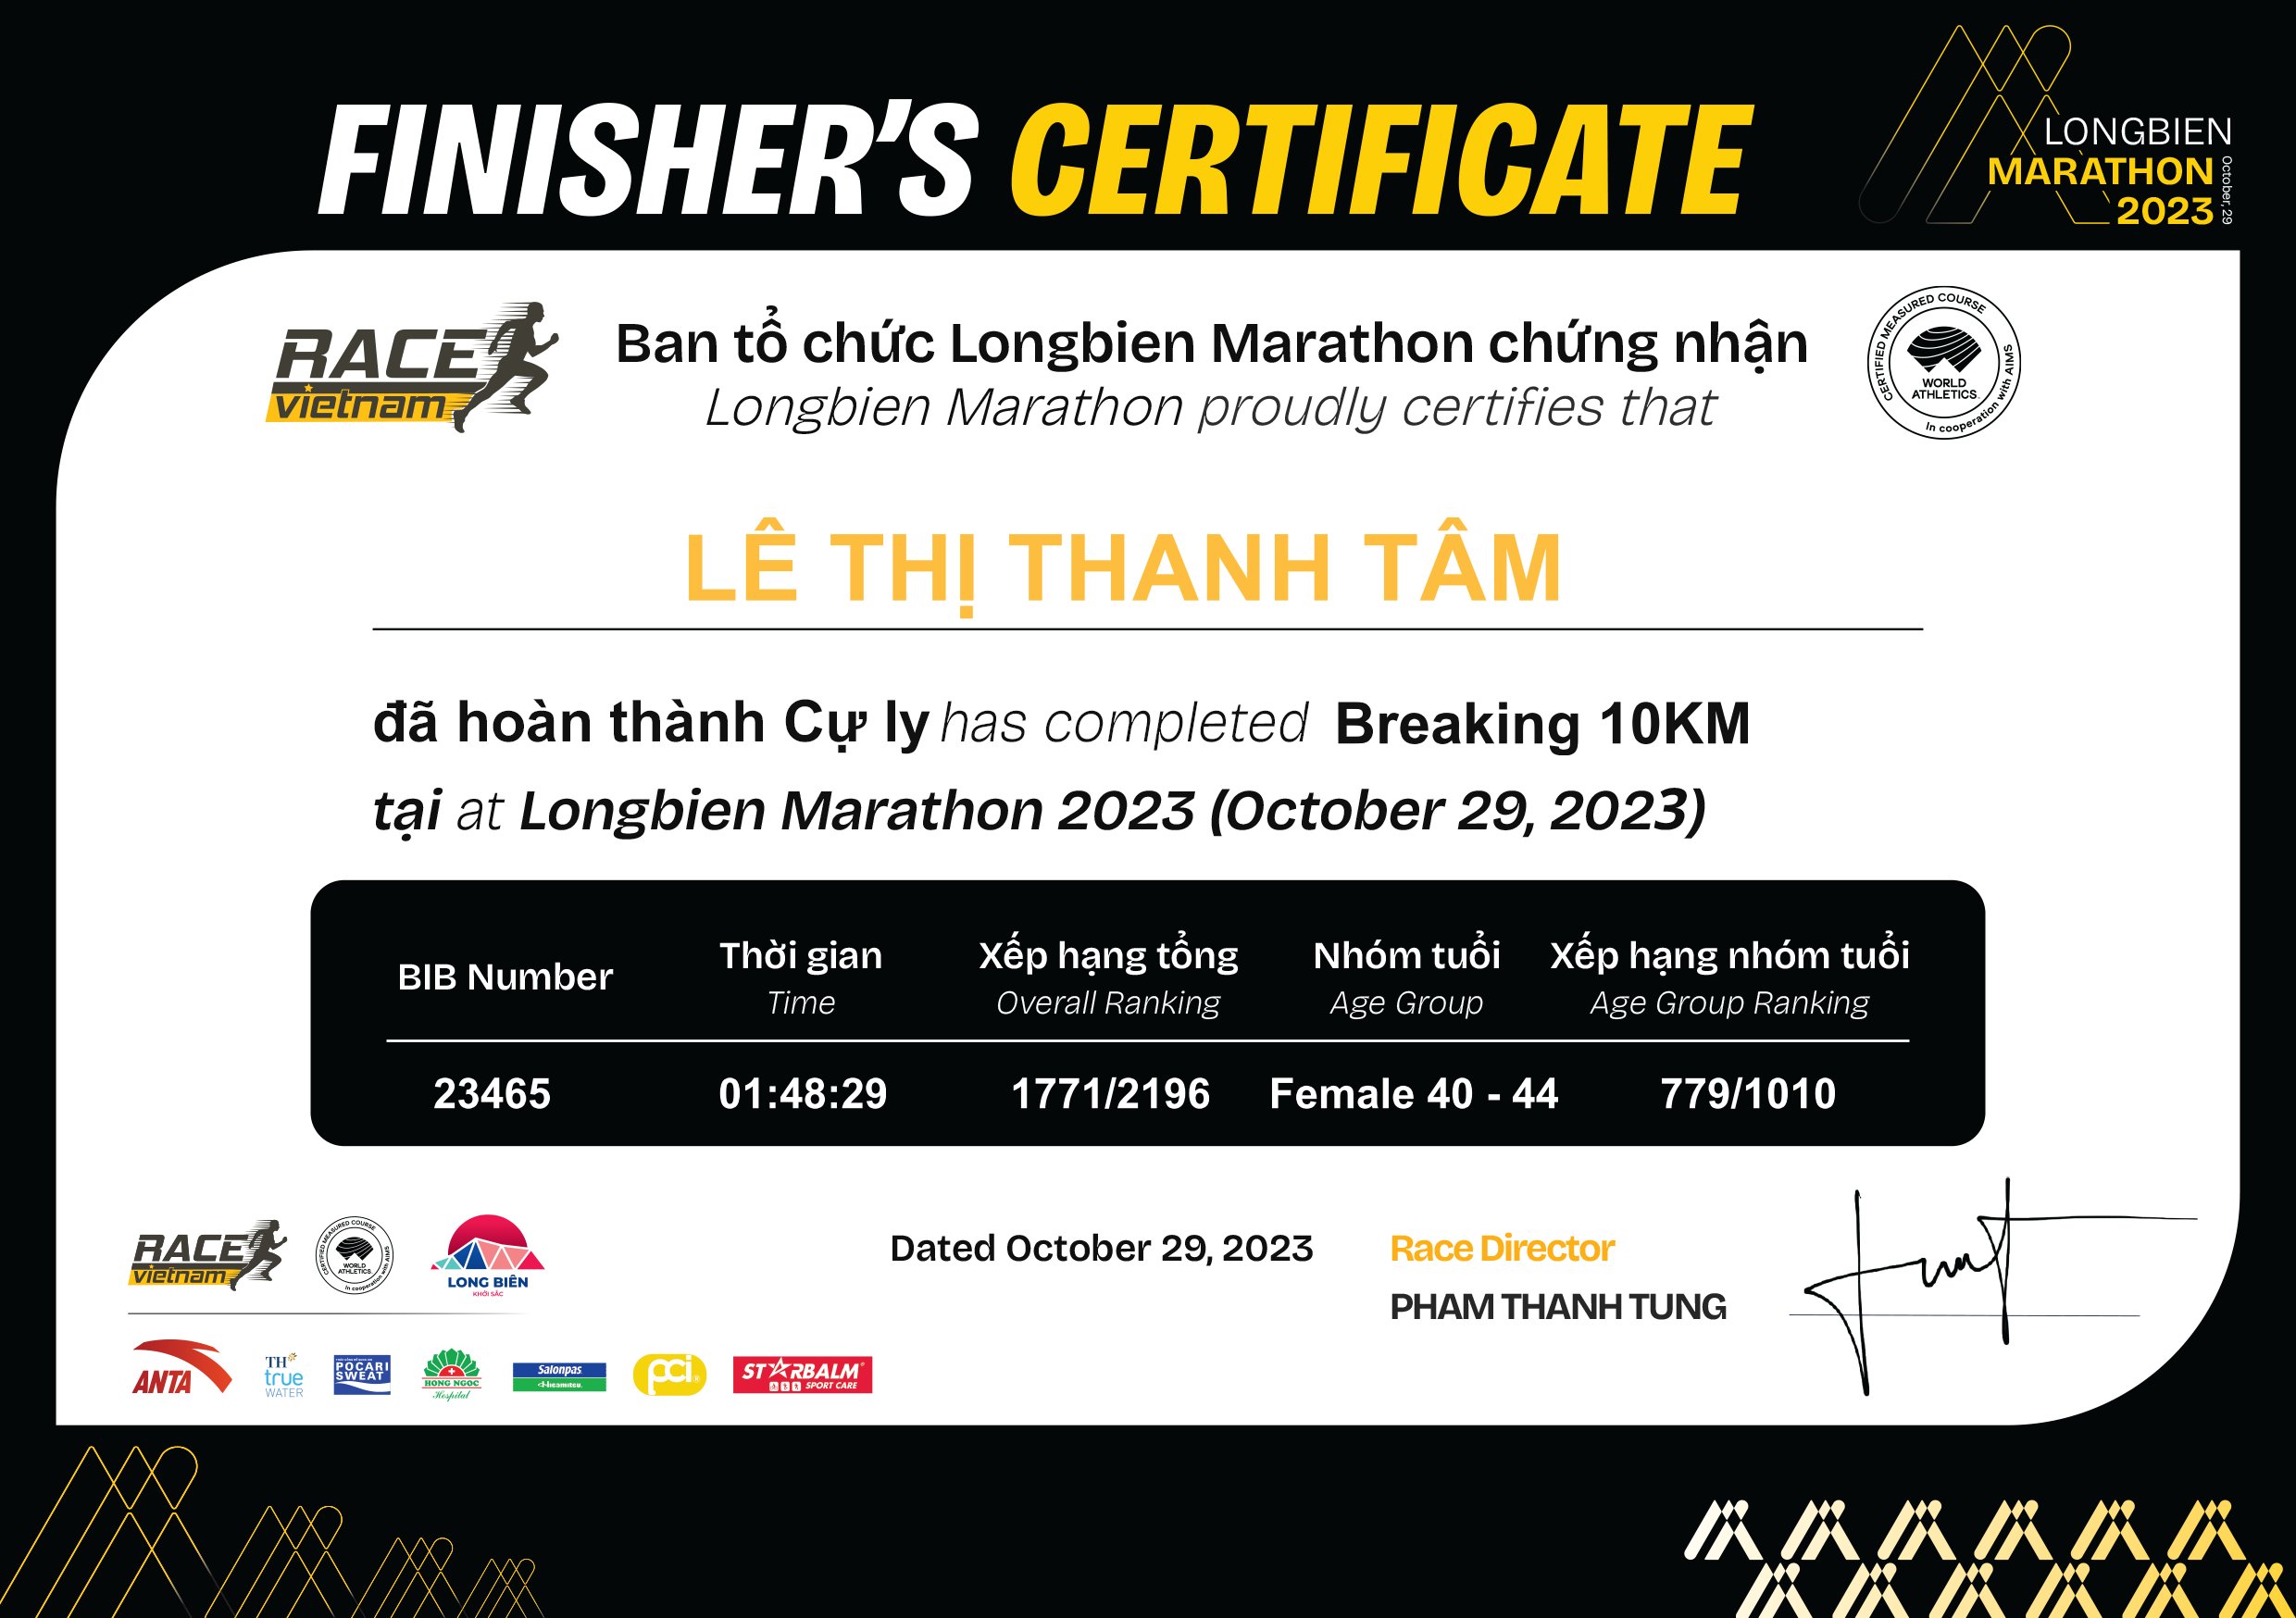 23465 - Lê Thị Thanh Tâm